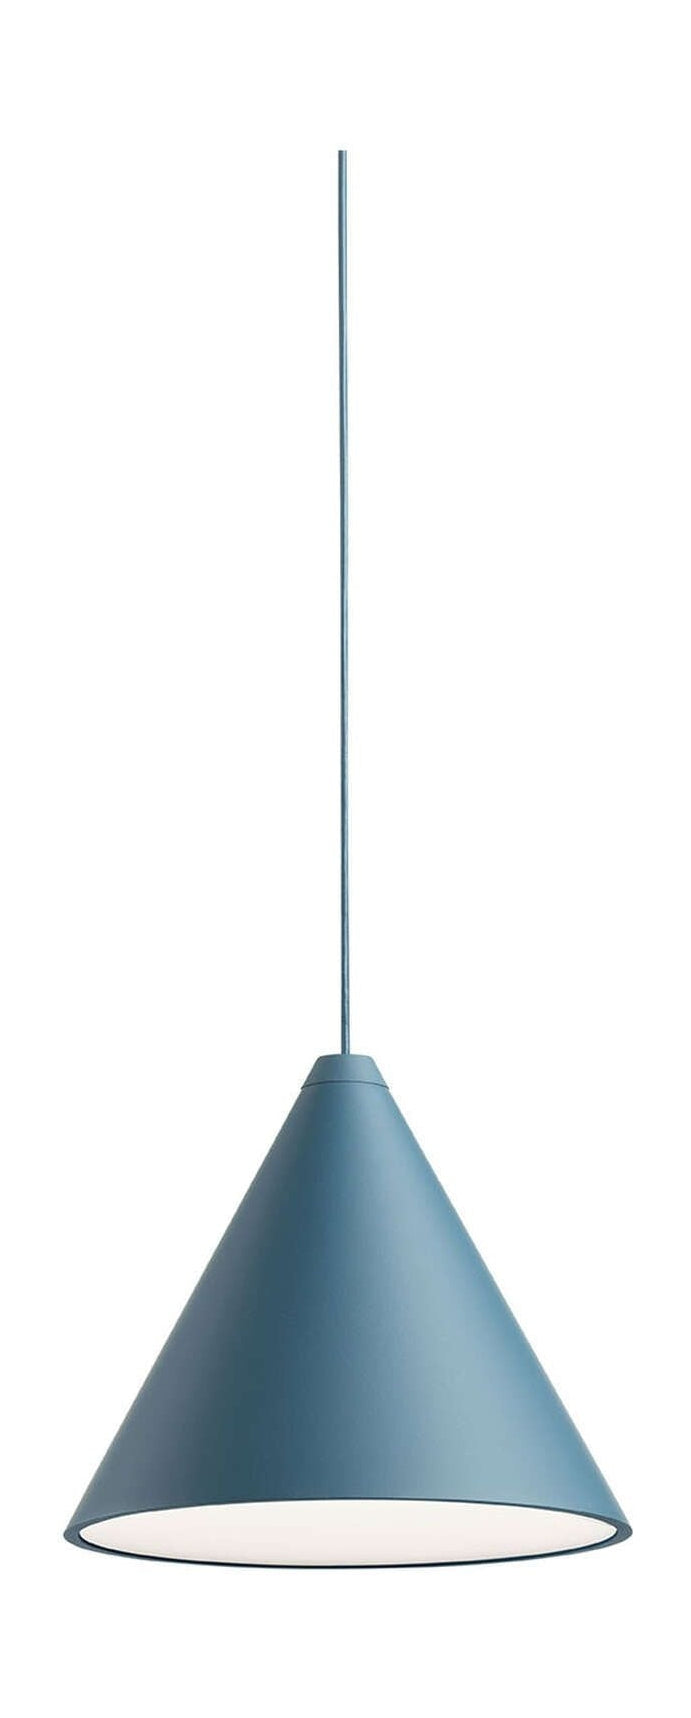 Lampa wisząca na głowice stożka strunowego FLOS 12 m, niebieski